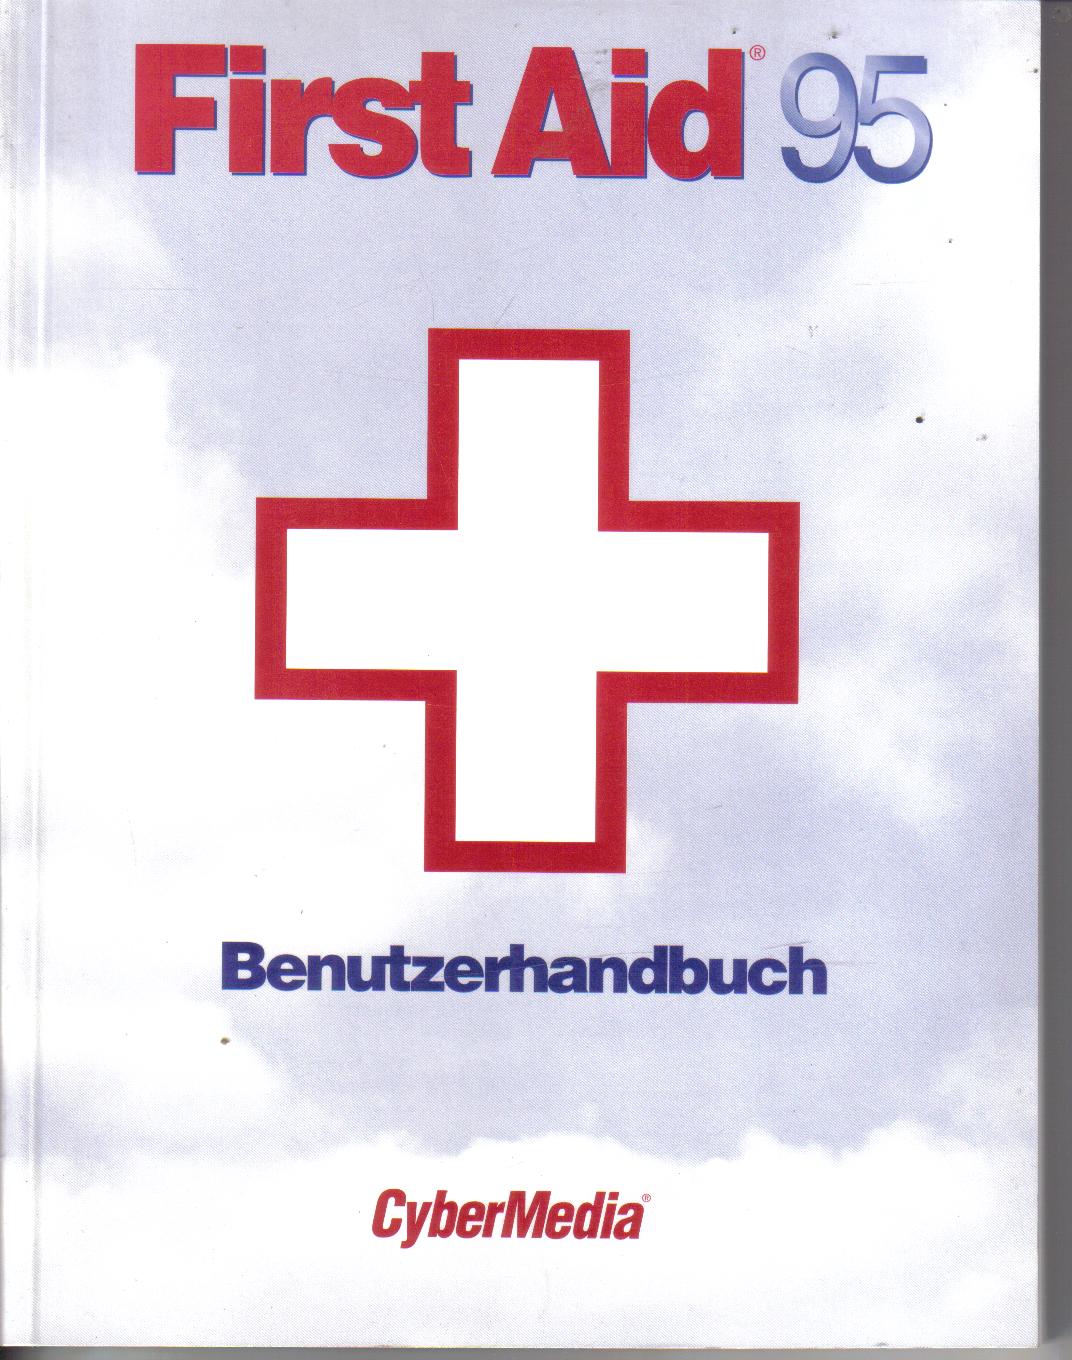 First Aid 95BenutzerhandbuchCyber Media